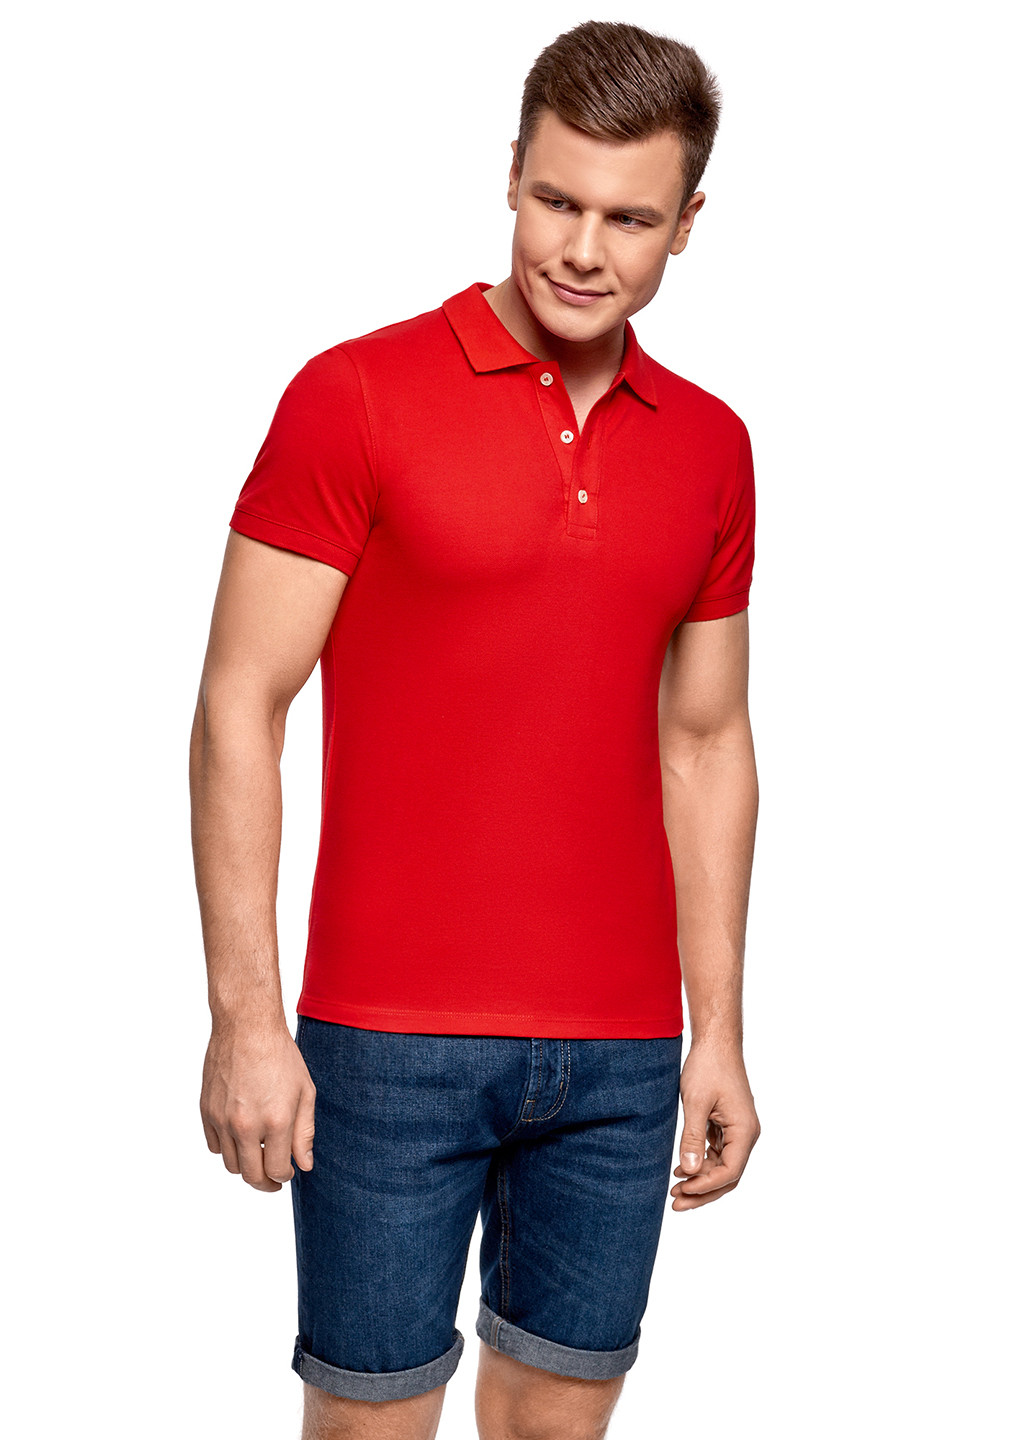 Красная футболка-поло для мужчин Oodji однотонная